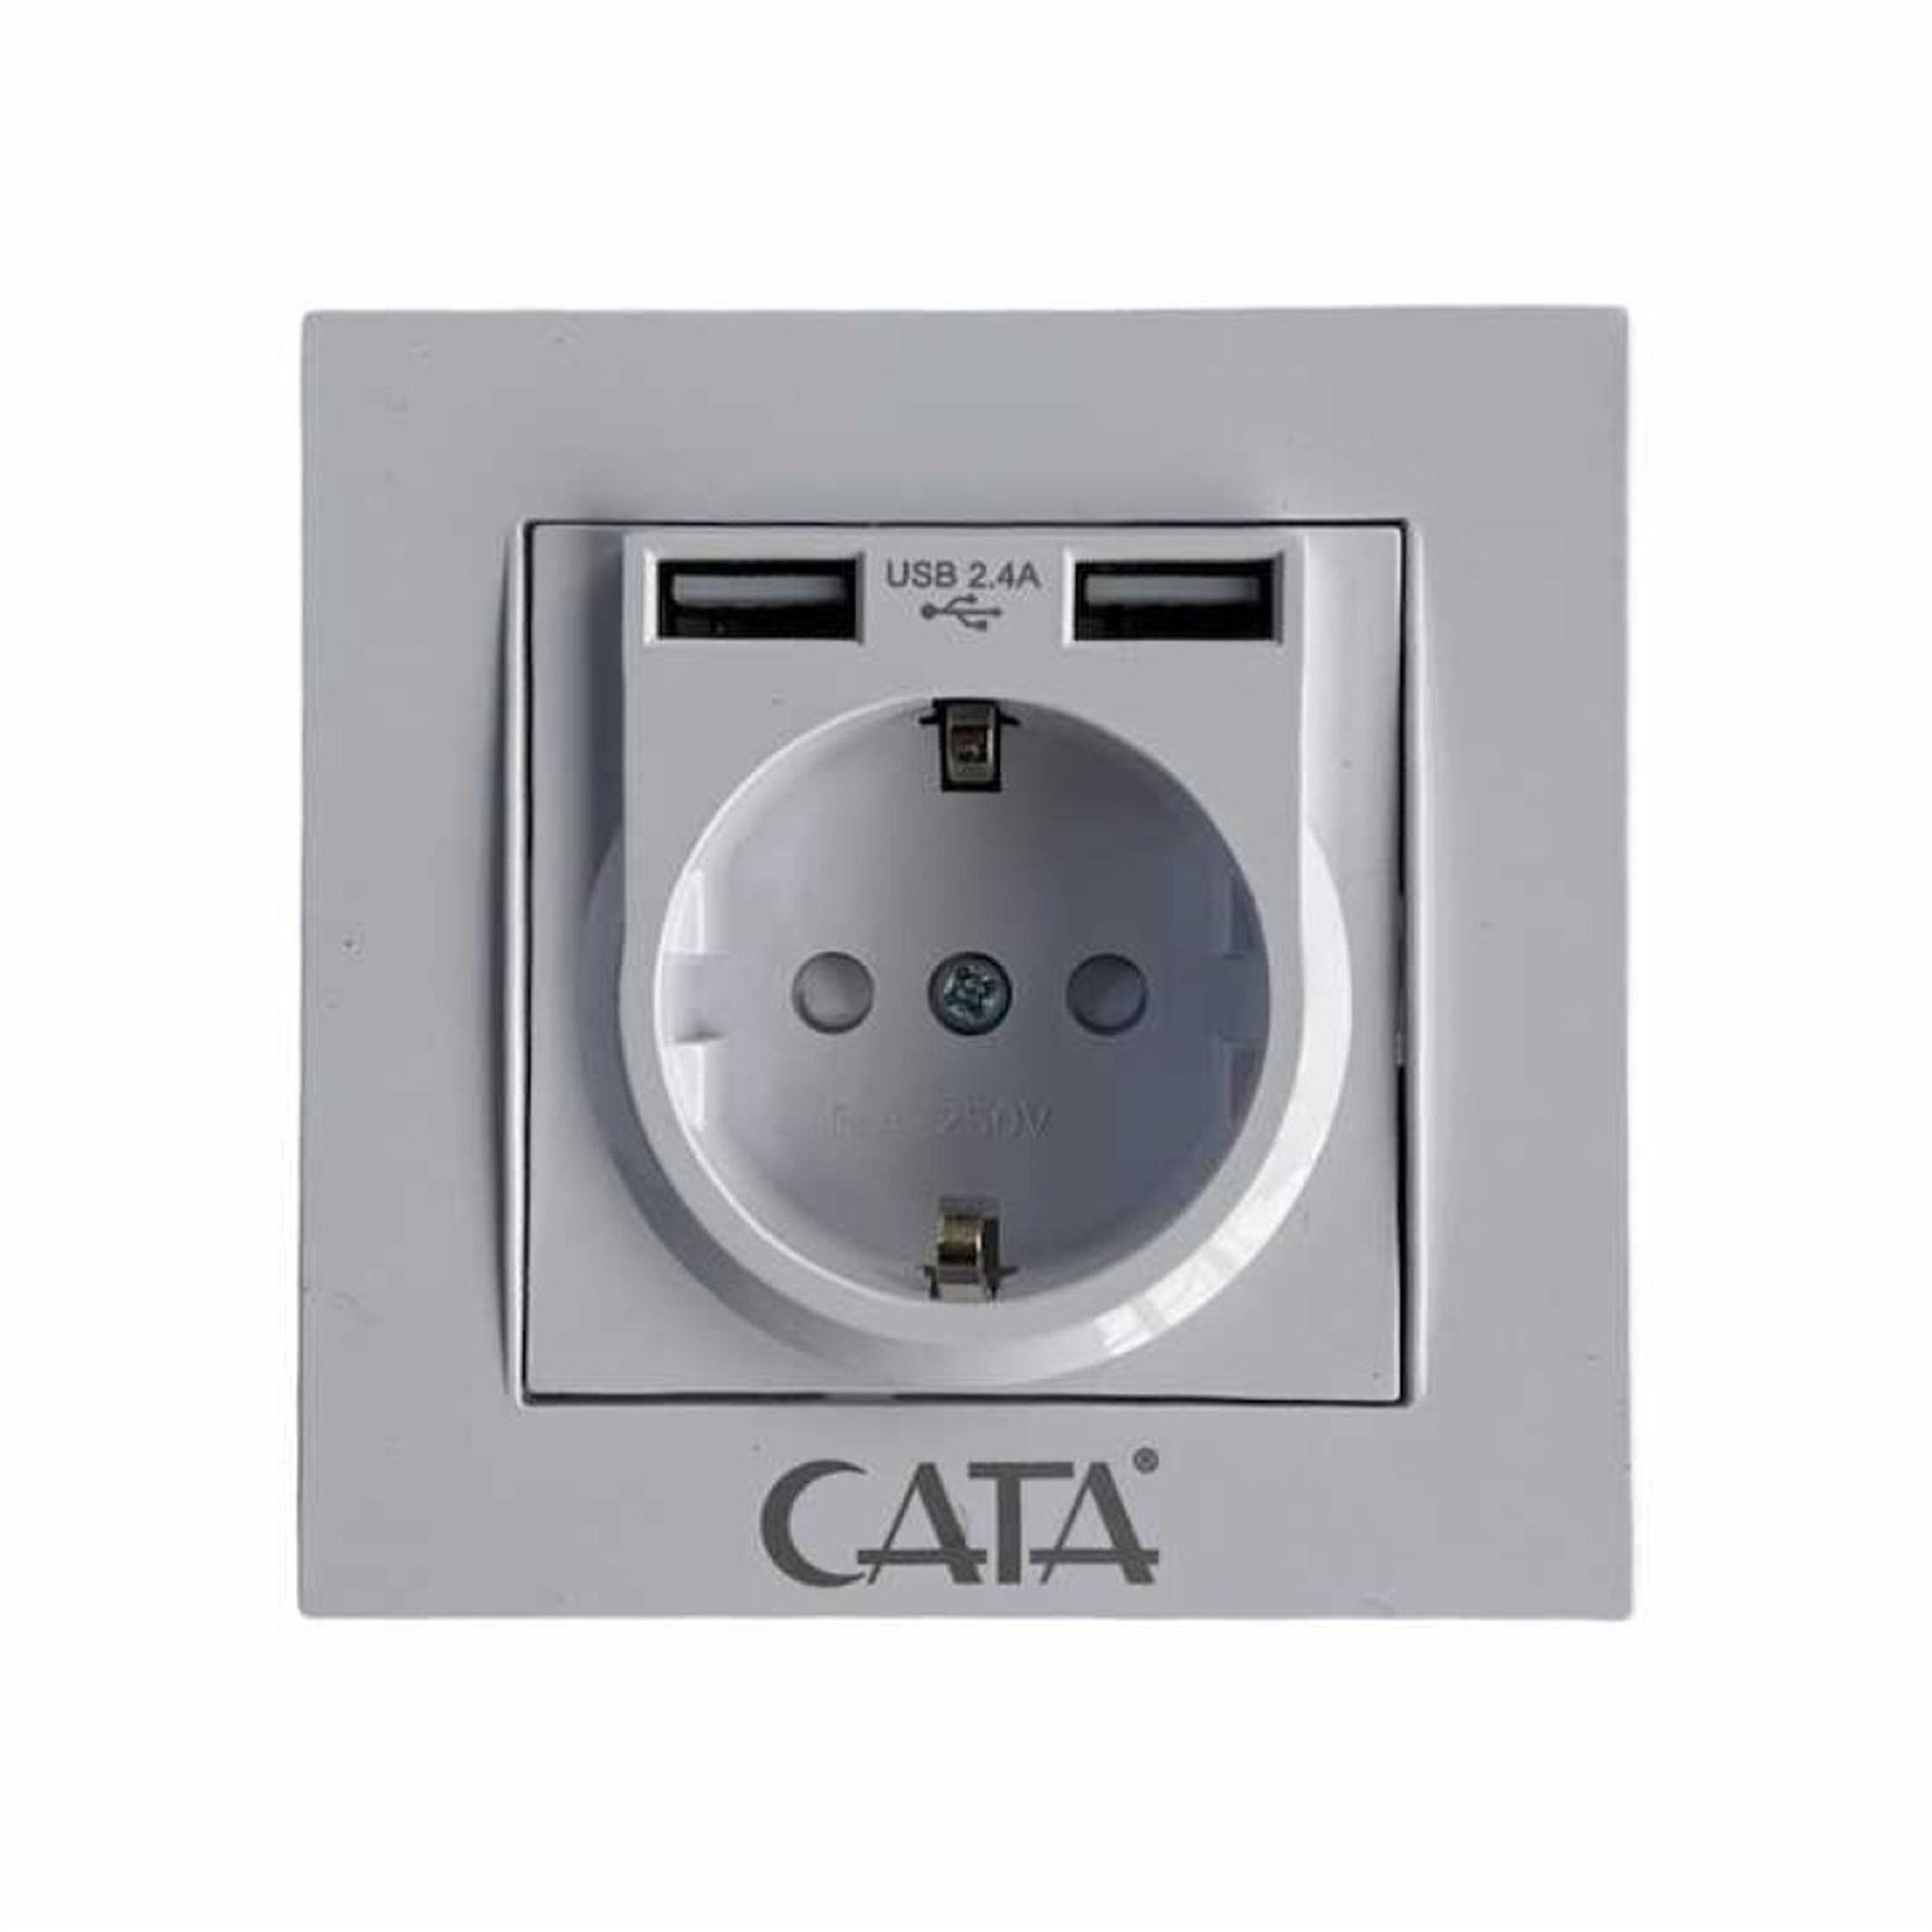 CATA Çita 2 Hızlı USB Şarjlı Sıva Altı Topraklı Priz (CT-3004) | Afeks Yapı  Market